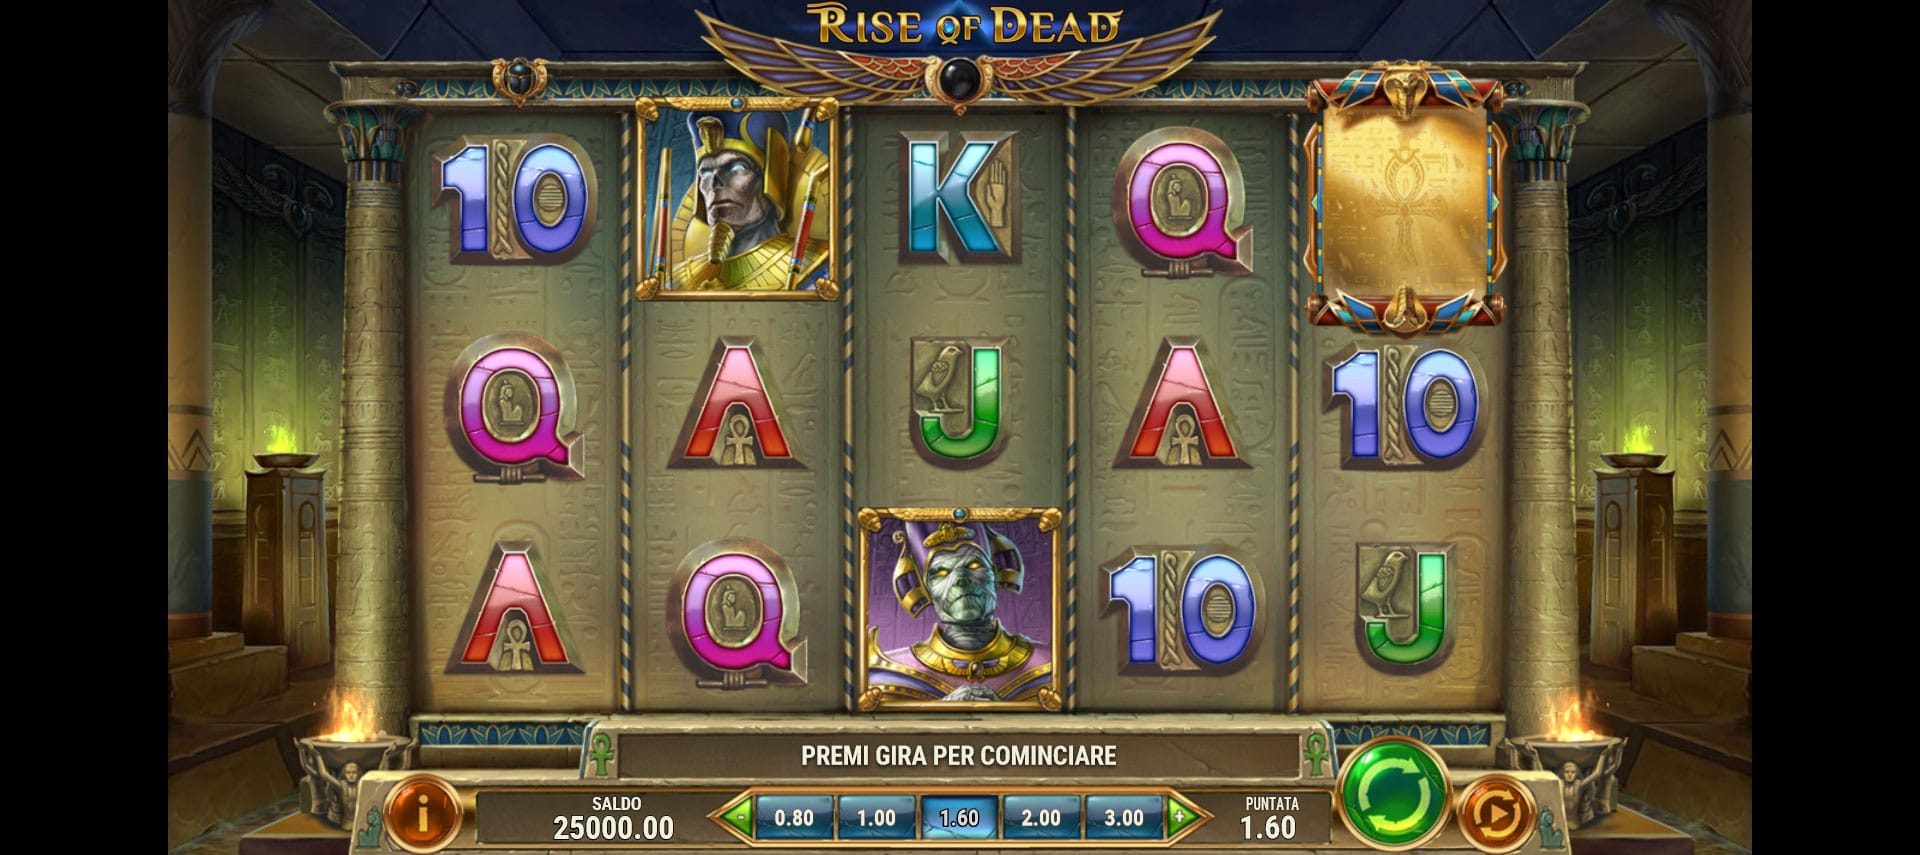 griglia di gioco della slot machine rise of dead